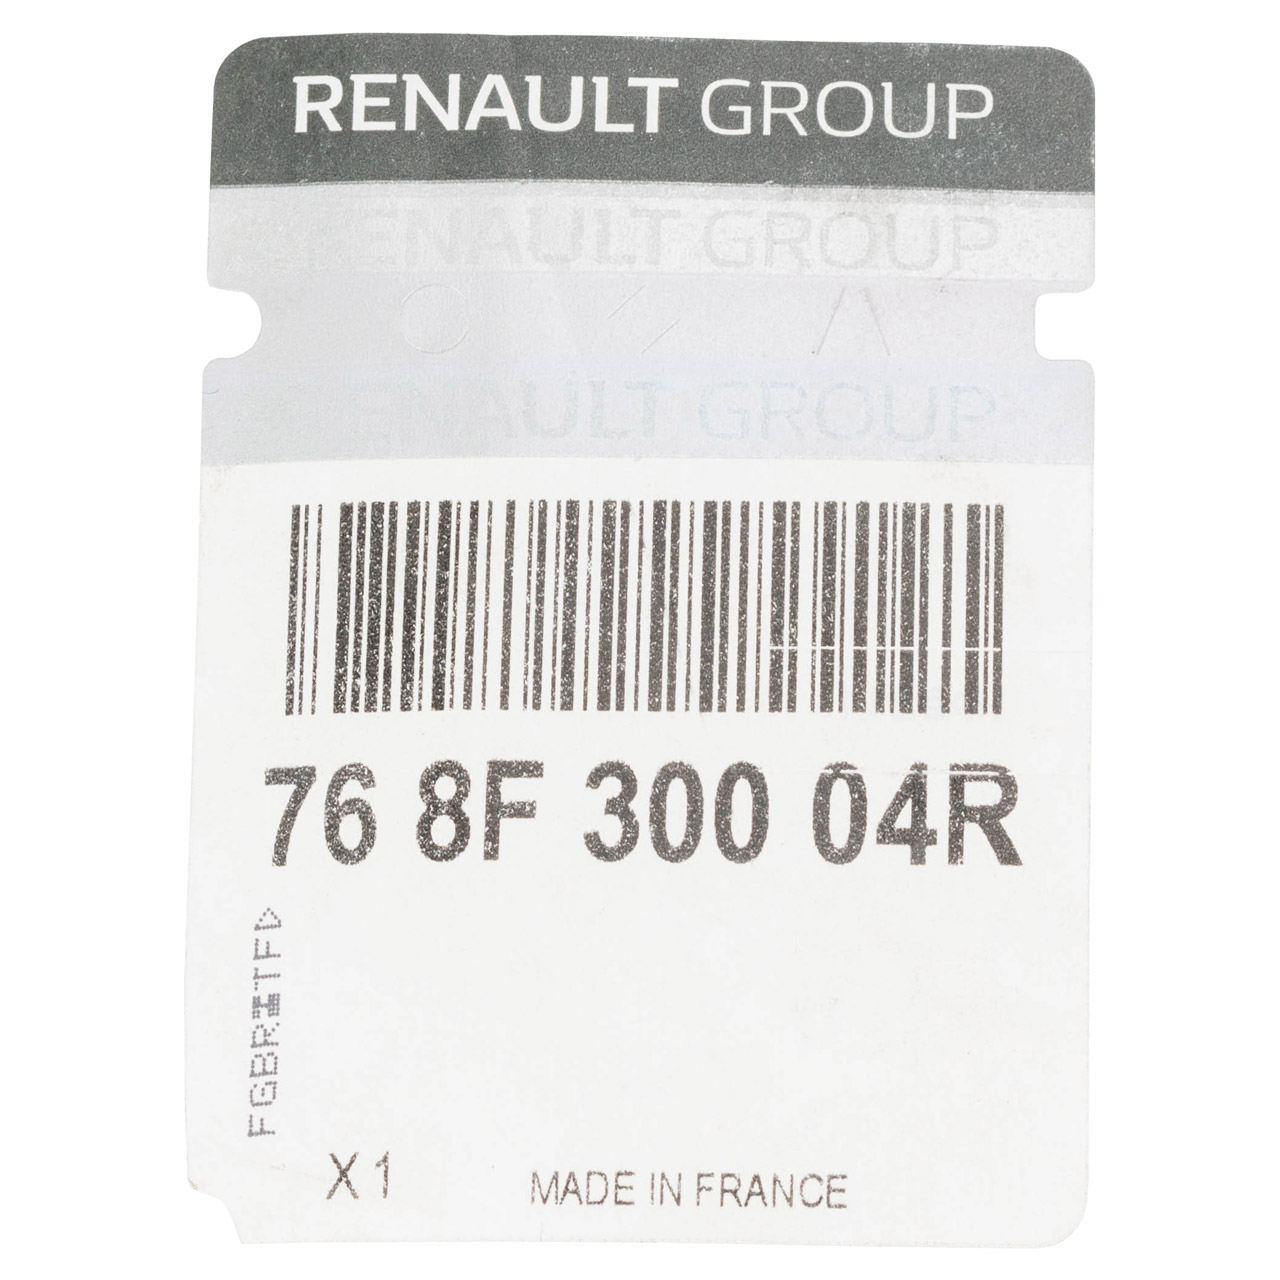 ORIGINAL Renault Zierleiste Seitenwand Schwarz Master 3 mitte rechts 768F30004R